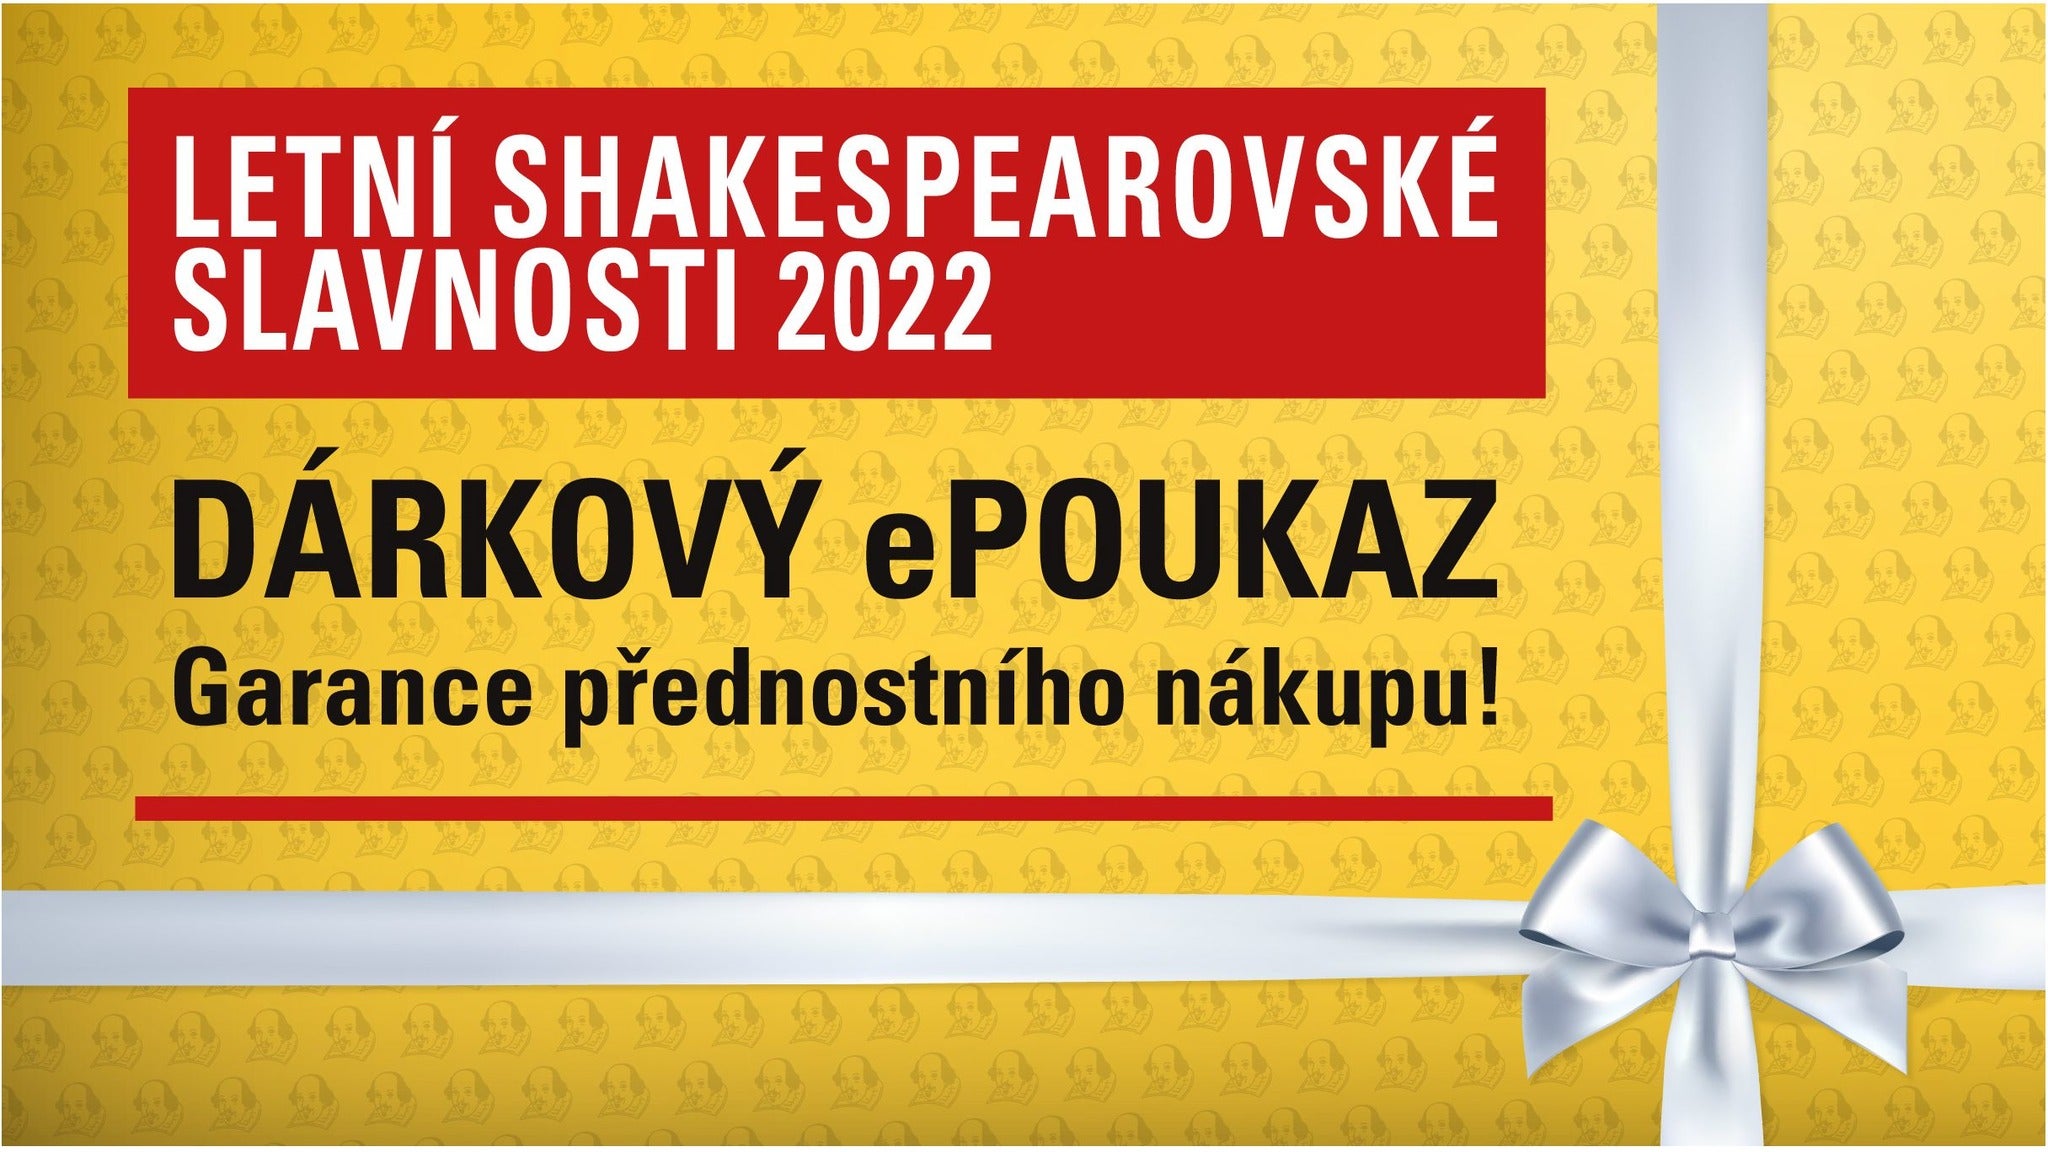 Dárkový ePoukaz Letní Shakespearovské slavnosti Praha -Praha